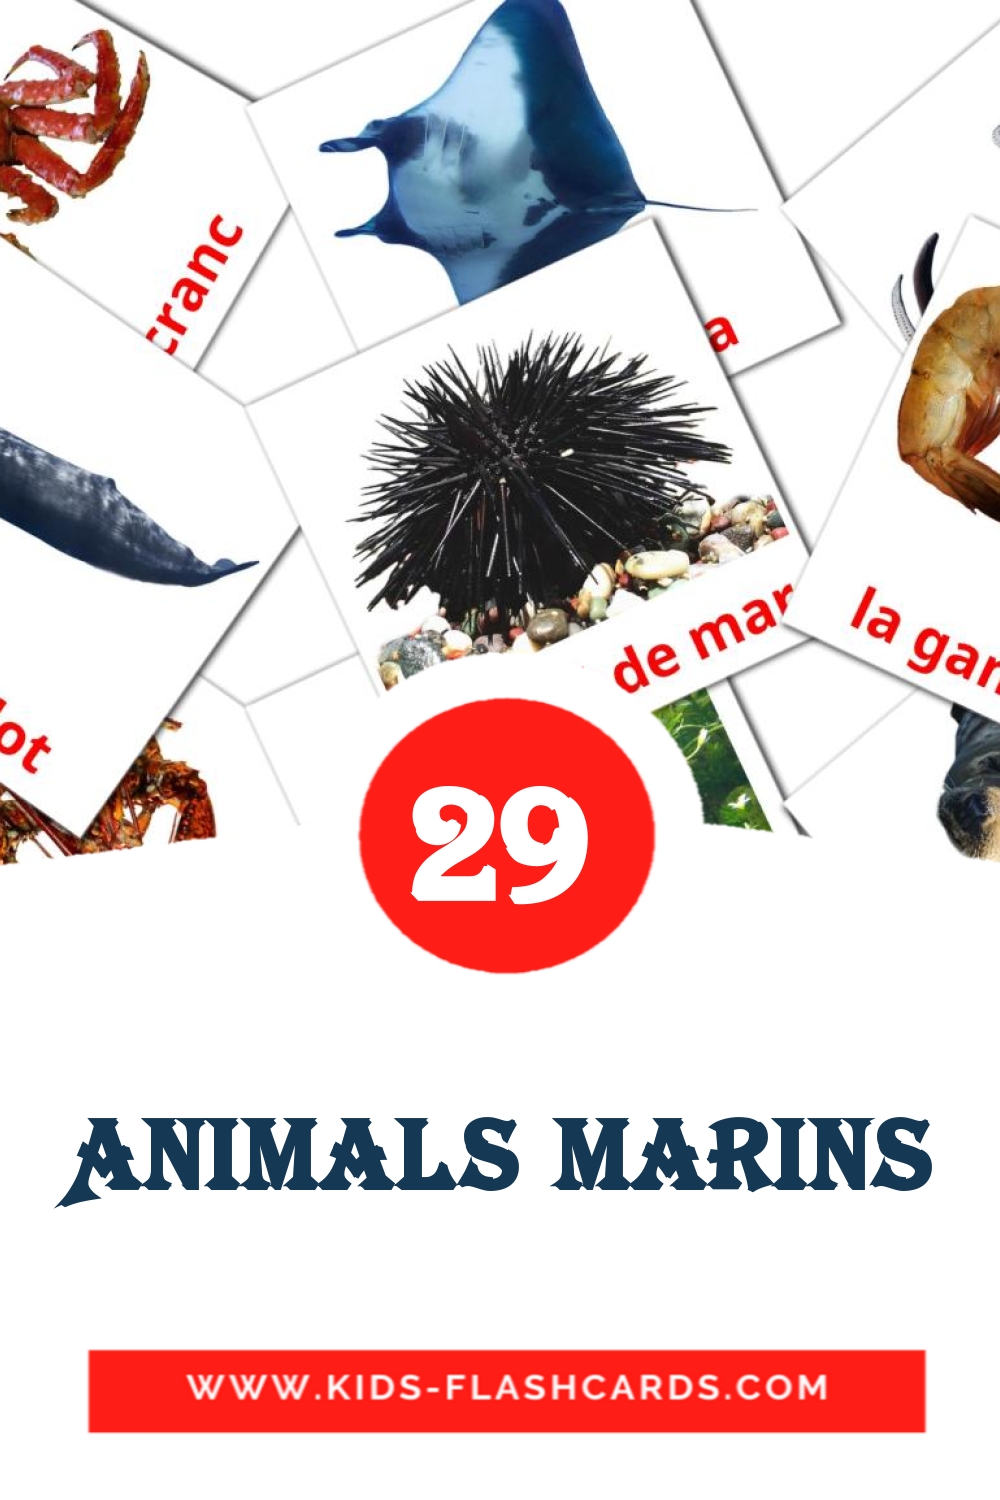 Animals marins на каталонском для Детского Сада (29 карточек)